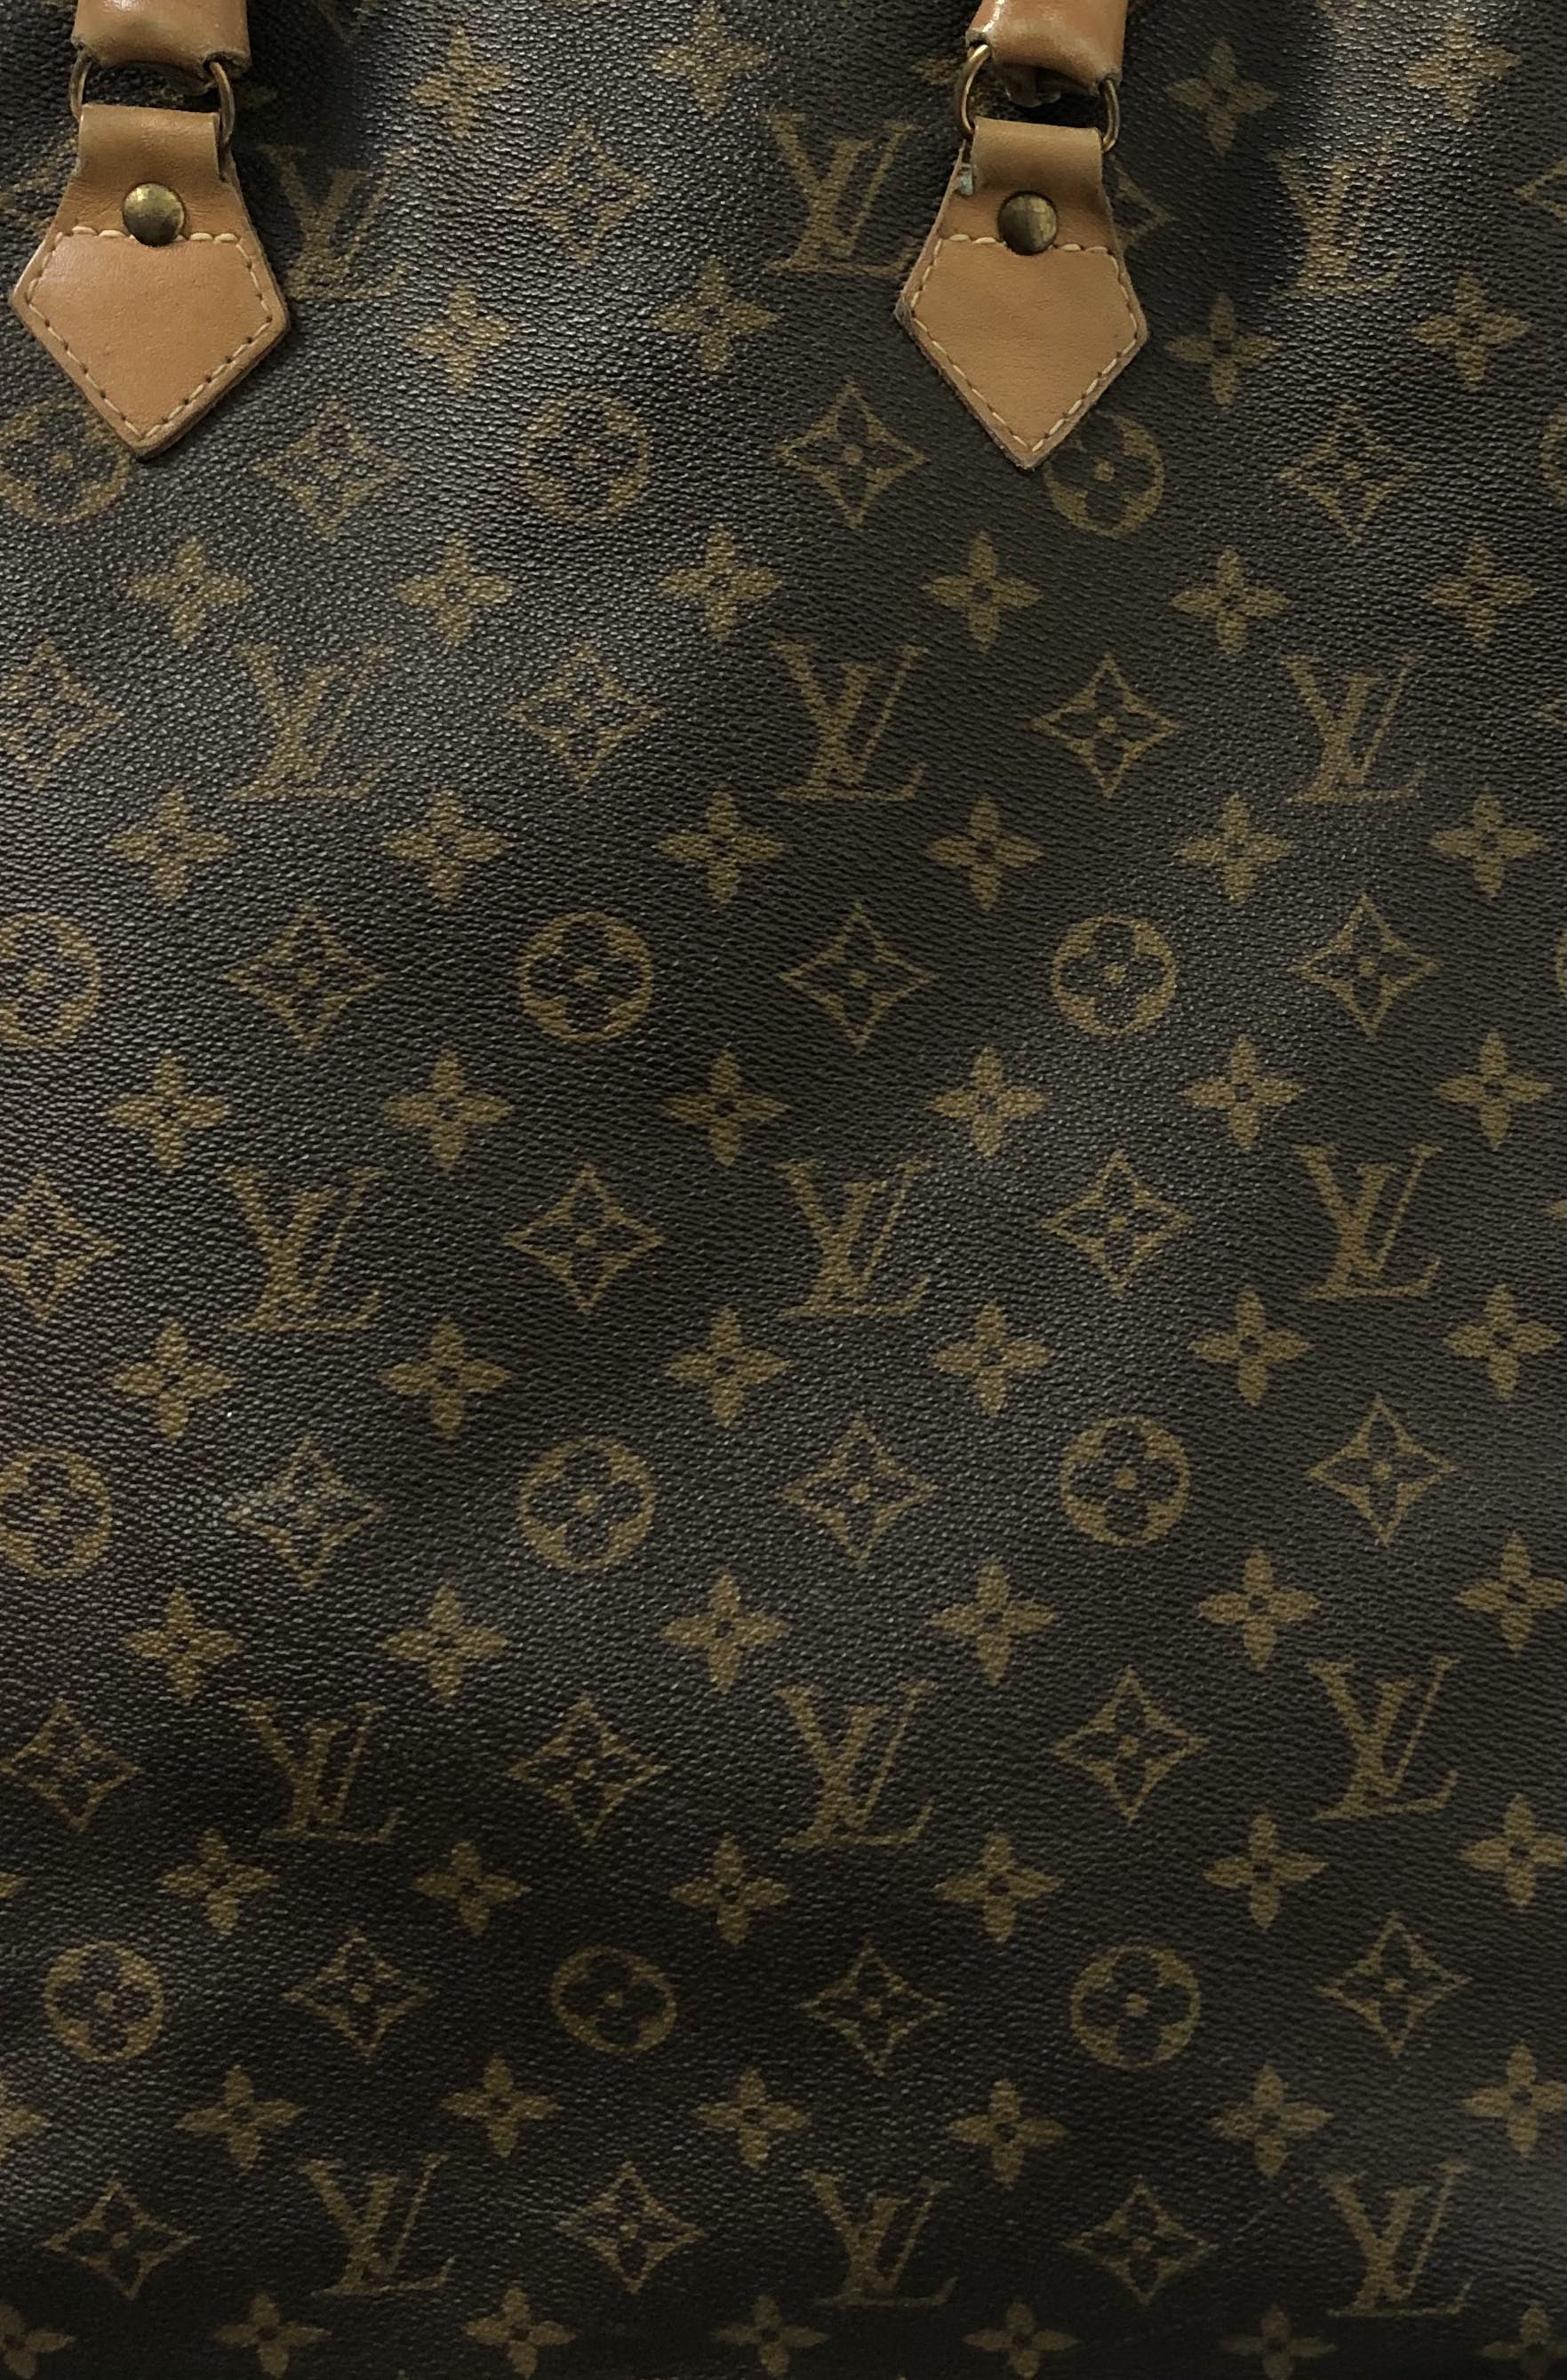 Louis Vuitton Vintage 1970’s Monogram Sac Plat Tote Bag